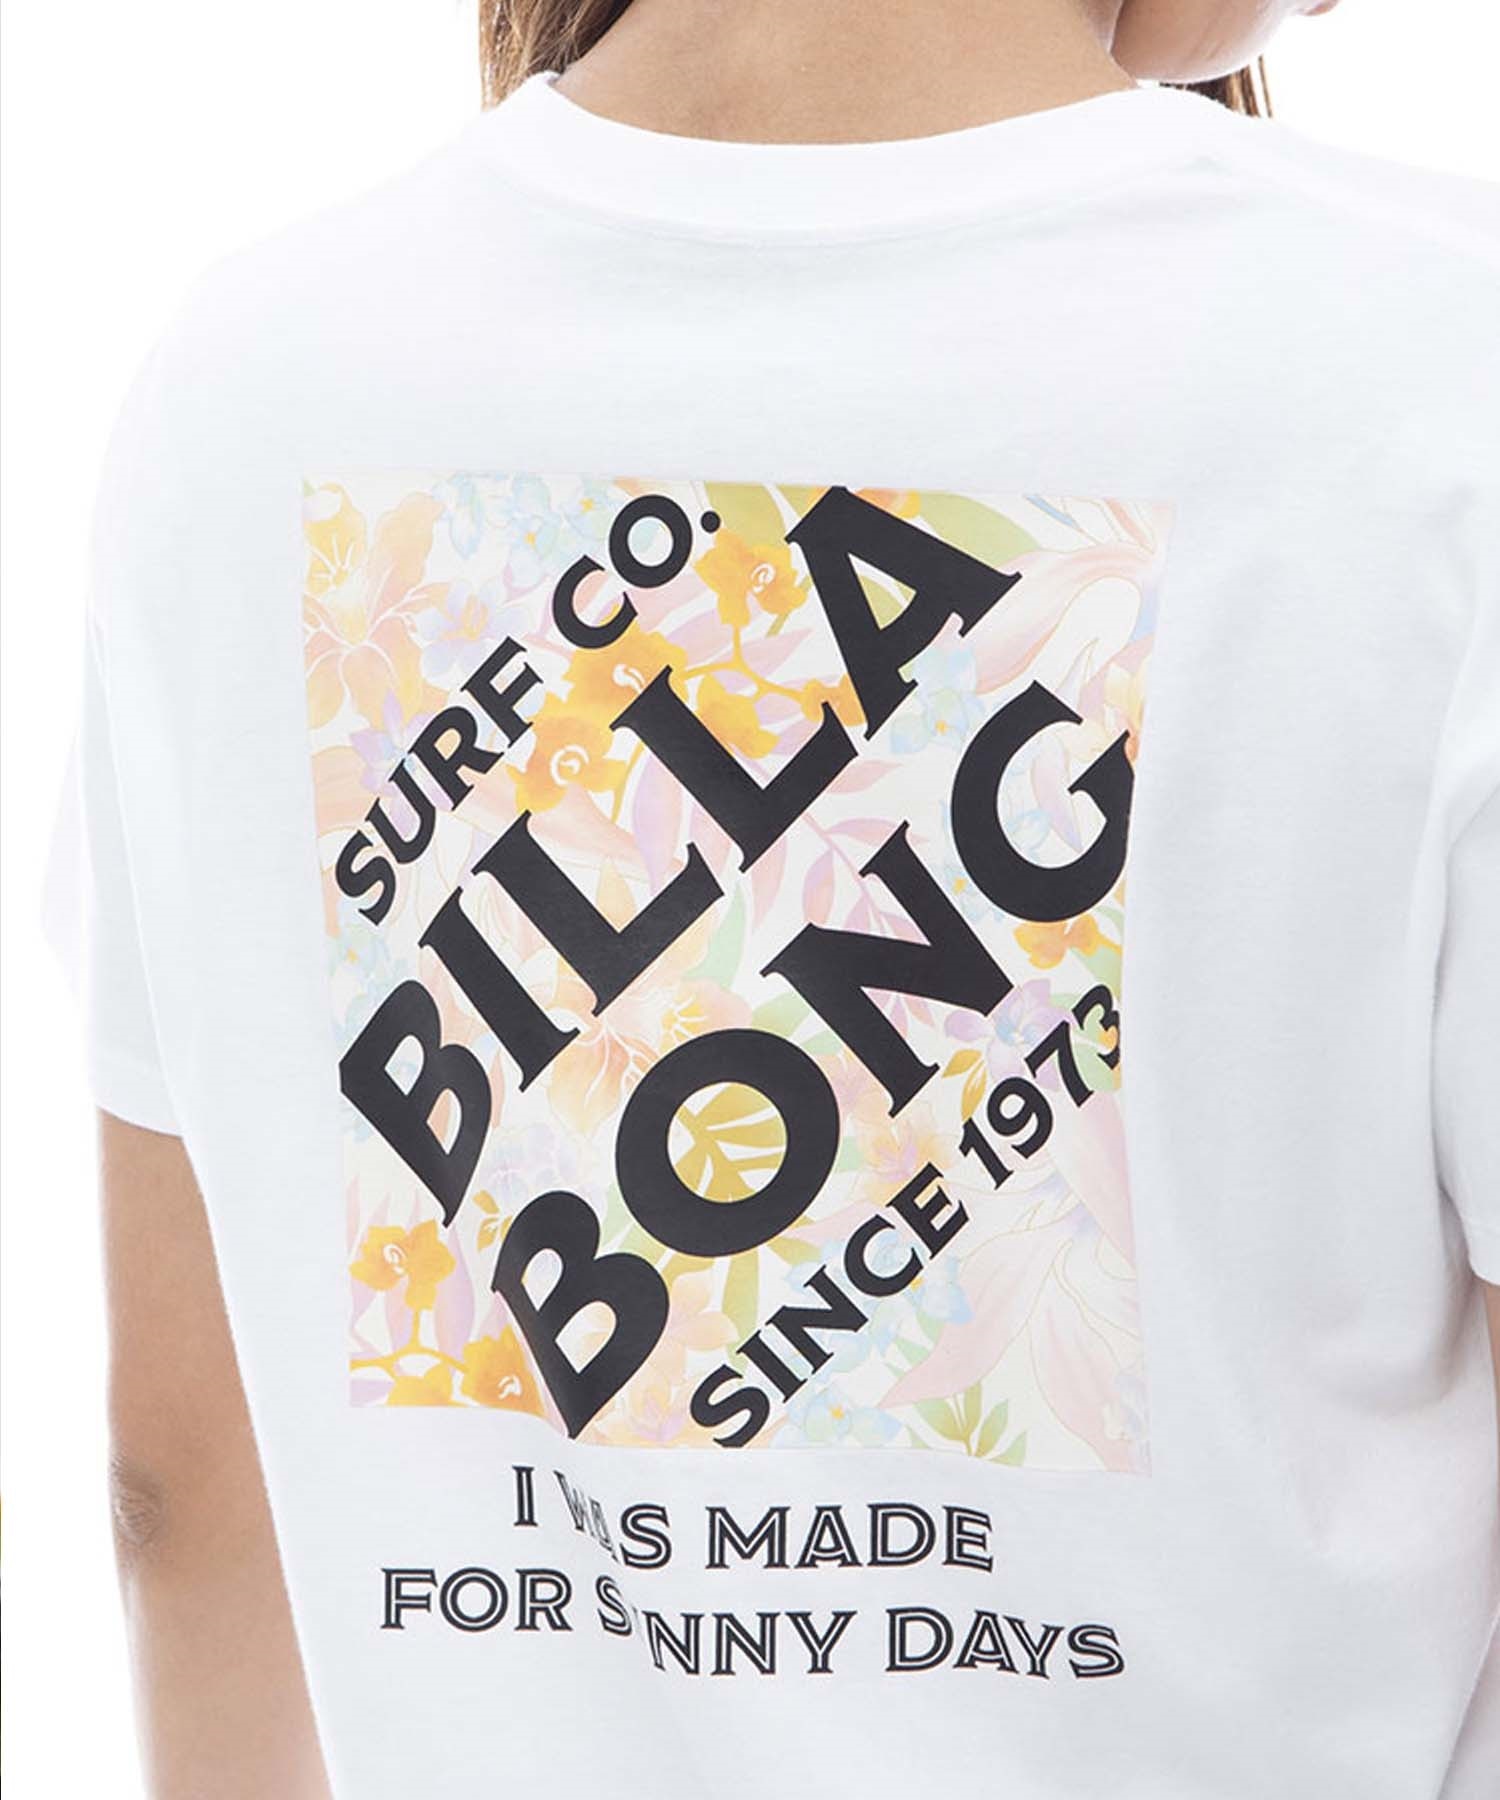 【クーポン対象】BILLABONG ビラボン SQUARE LOGO TEE レディース 半袖Tシャツ ブランドロゴ ボーイフィット BE013-201(WHT-M)